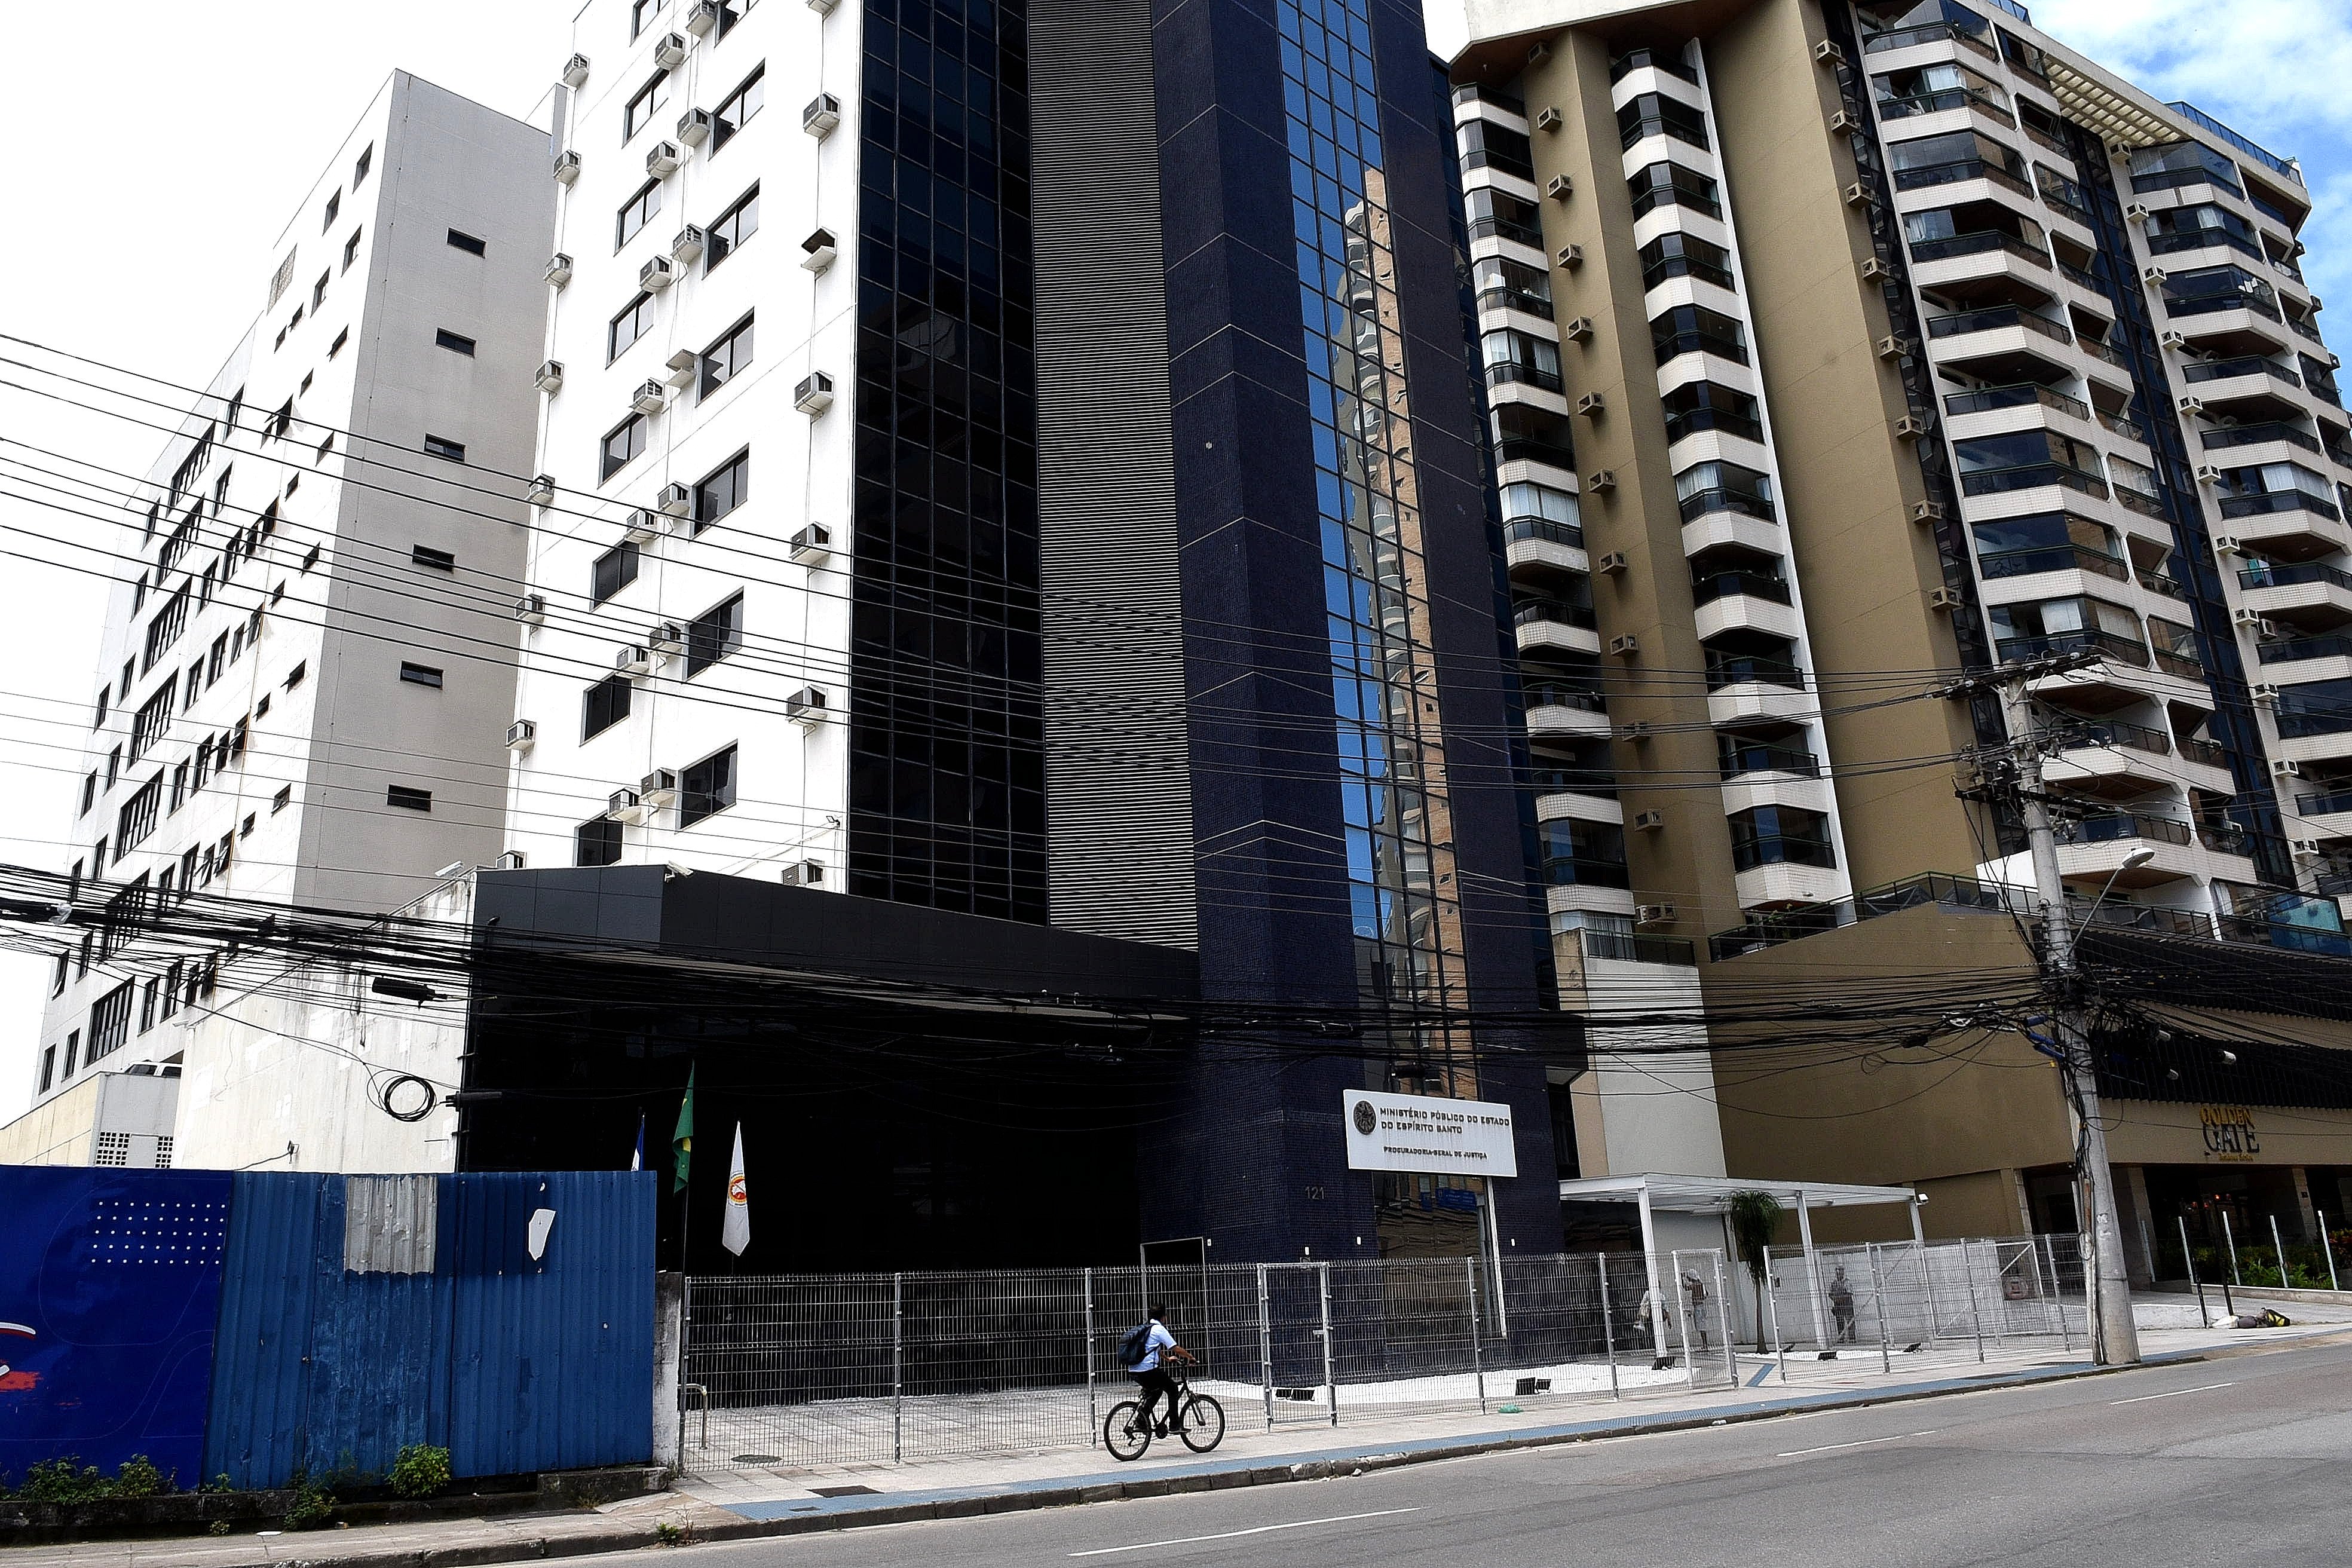 Uma empresa de Linhares é suspeita de estar envolvida no golpe, segundo investigações do Ministério Público do Espírito Santo; proprietário se encontra foragido